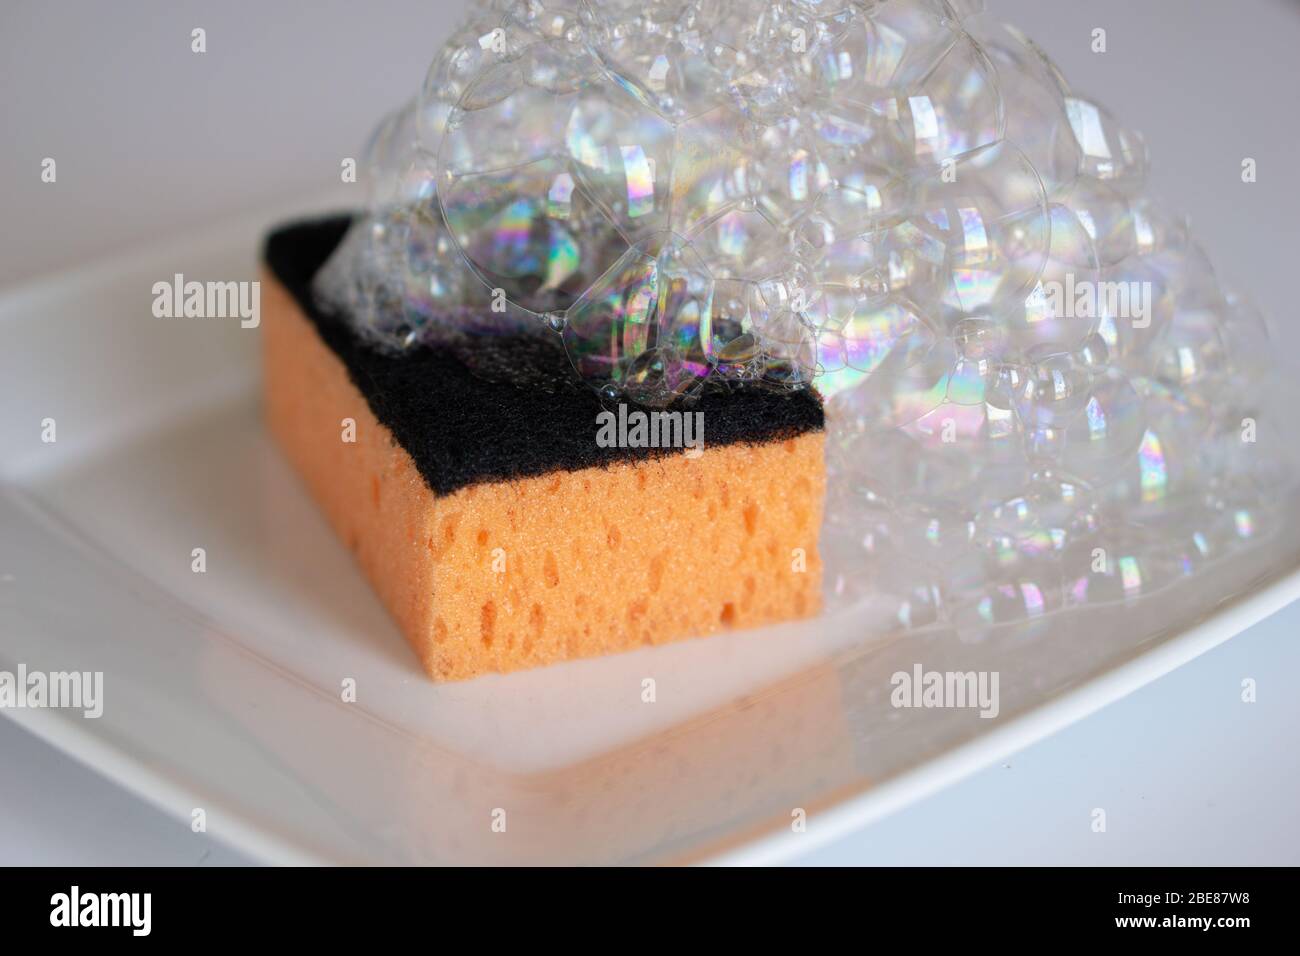 Sponge Foam for plate